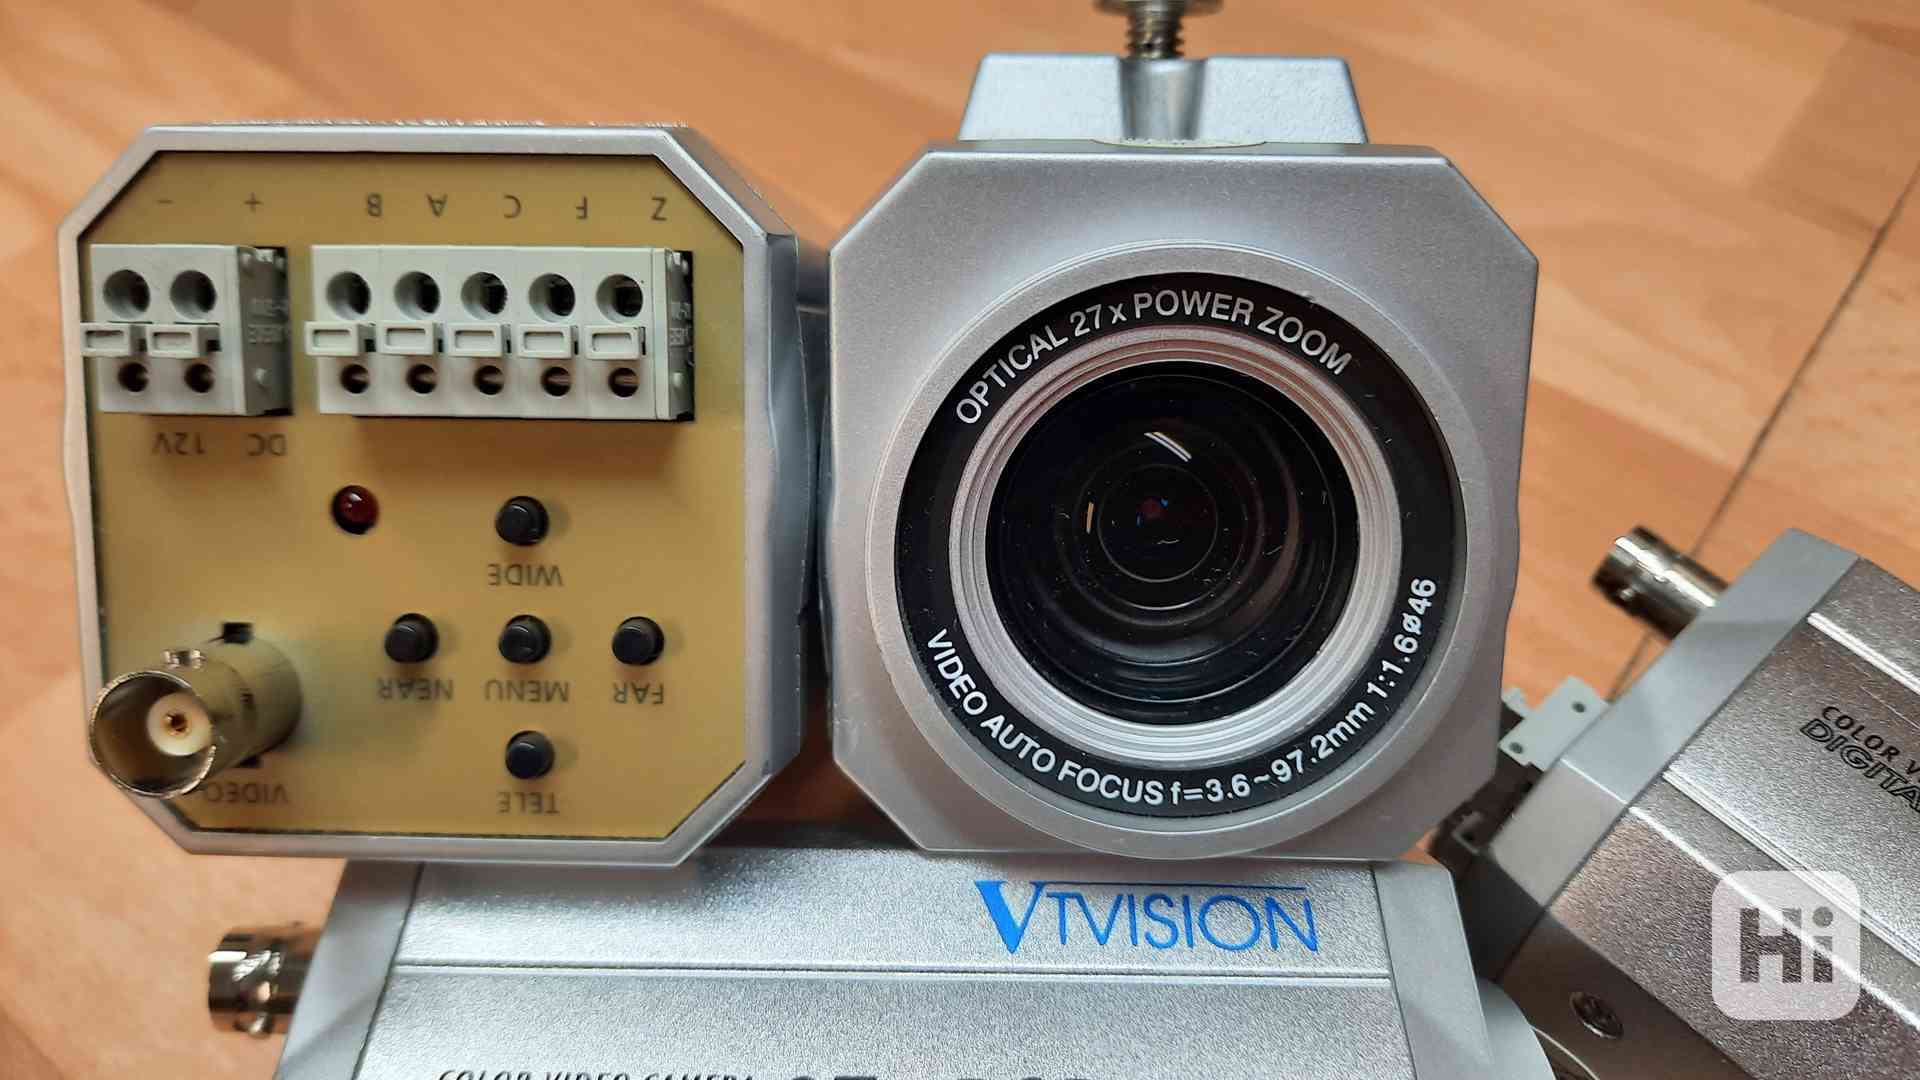 CCTV bezpečnostní kamera Vtvision VTV 270X - foto 1